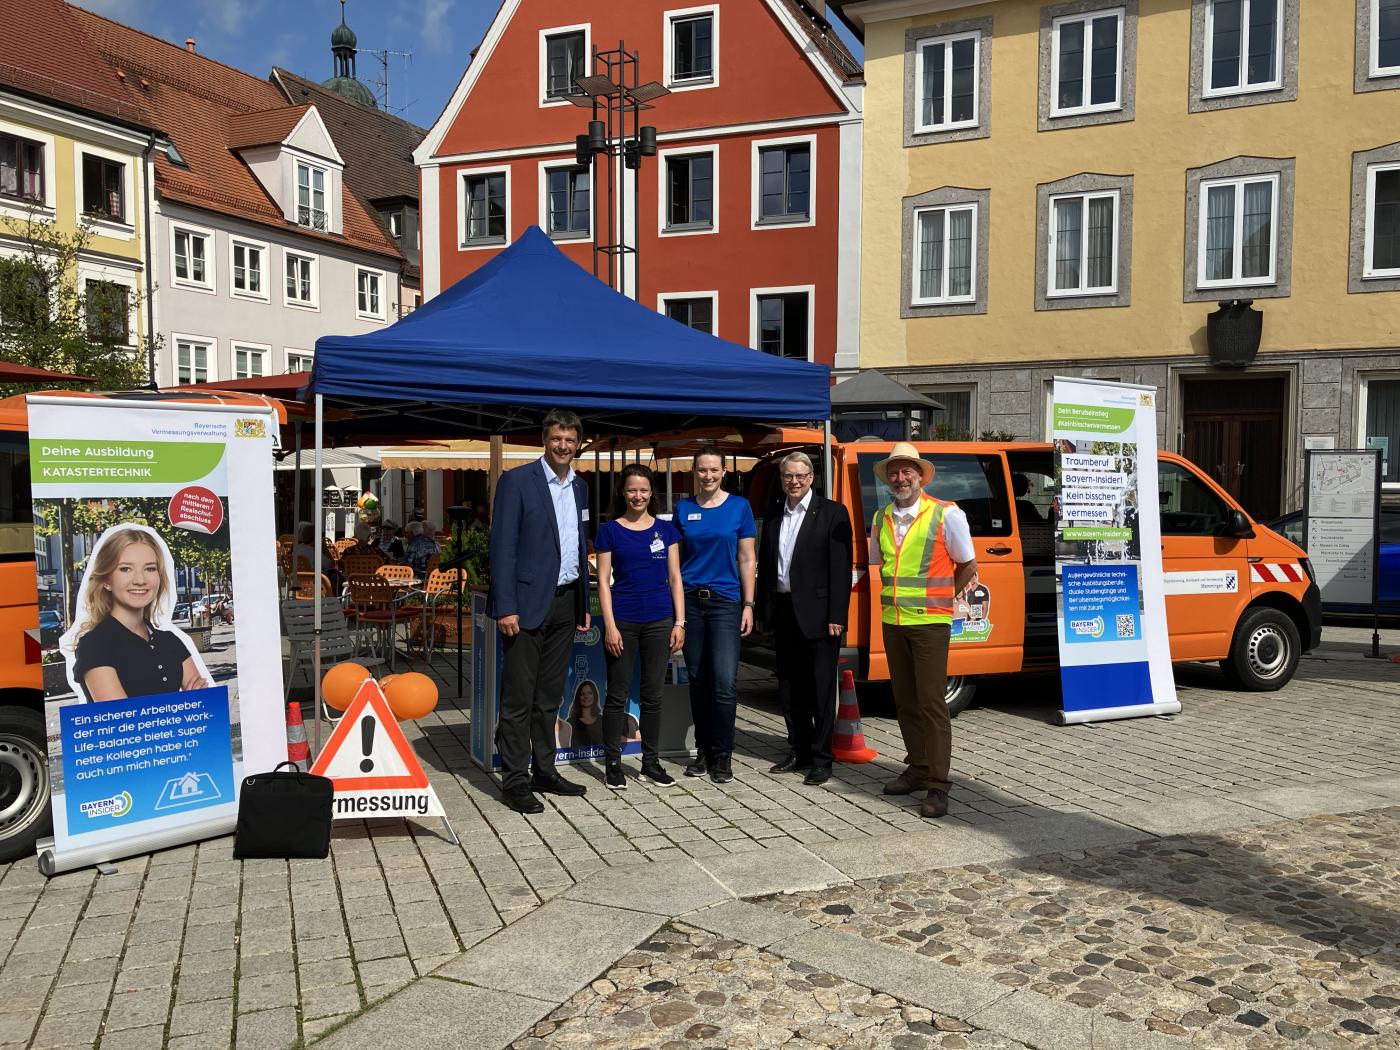 Gruppenfoto mit dem ersten Bürgermeister der Stadt Mindelheim, Dr. Stephan Winter